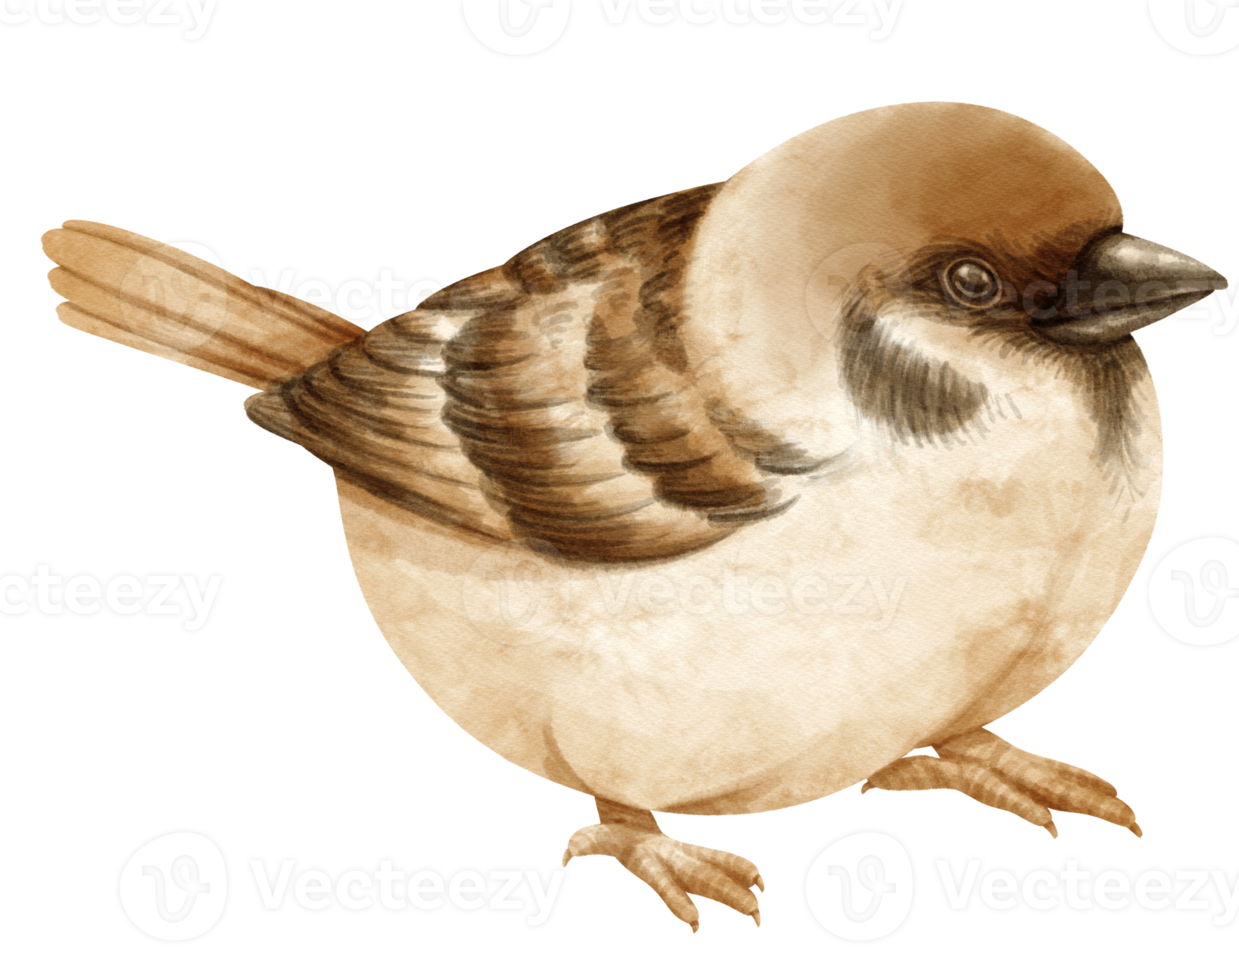 illustrazione dell'uccello del passero dell'acquerello png